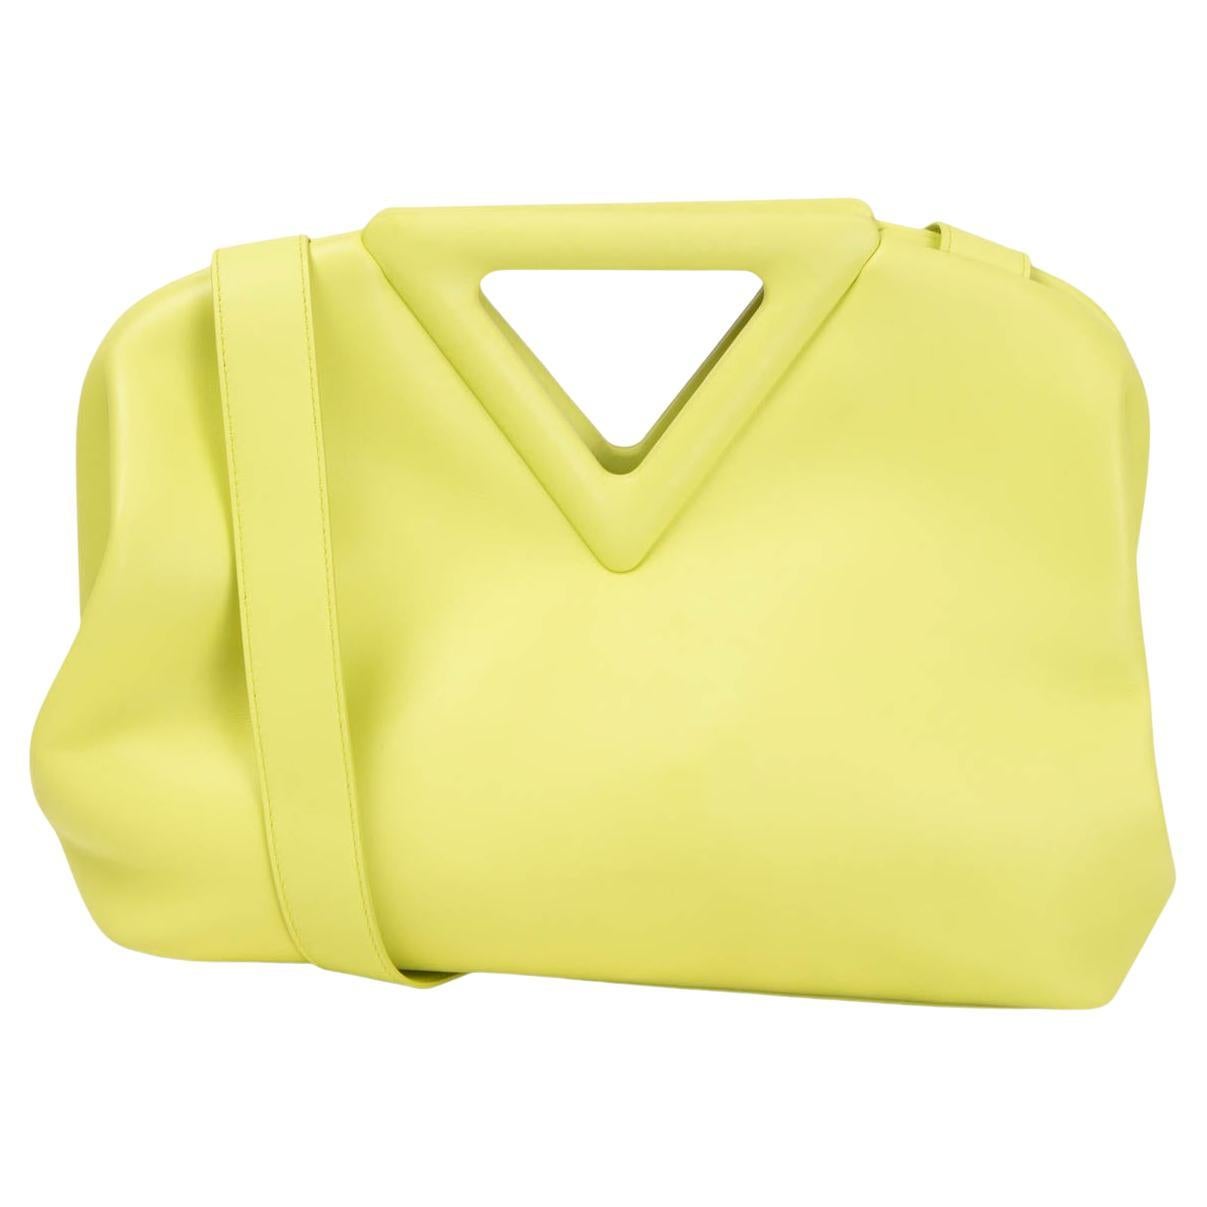 BOTTEGA VENETA Seagrass yellow leather POINT MEDIUM Tote Bag